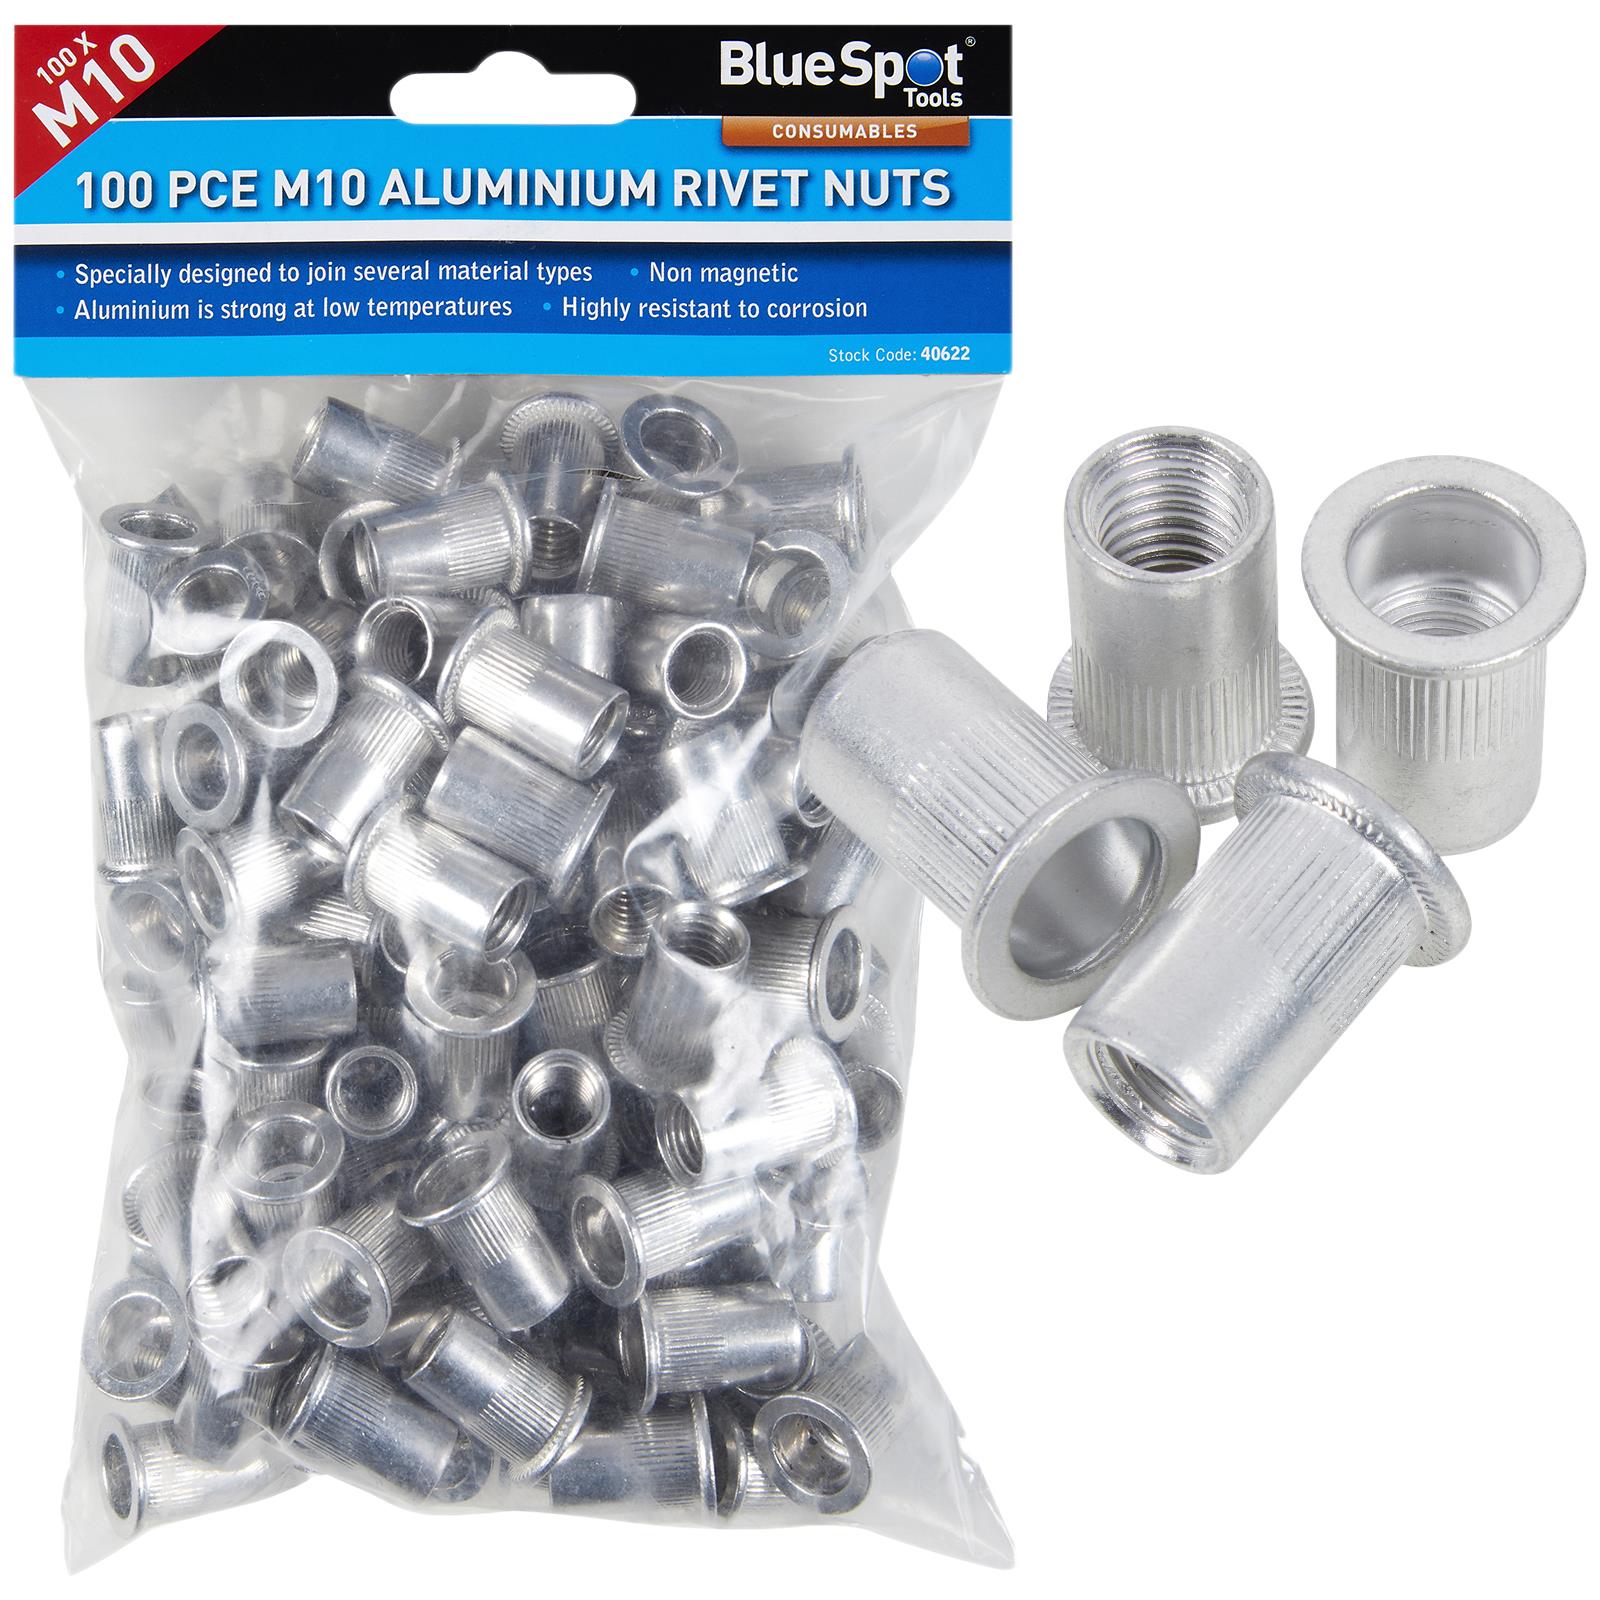 BlueSpot Aluminium Rivet Nuts M10 100 Piece Rivnuts